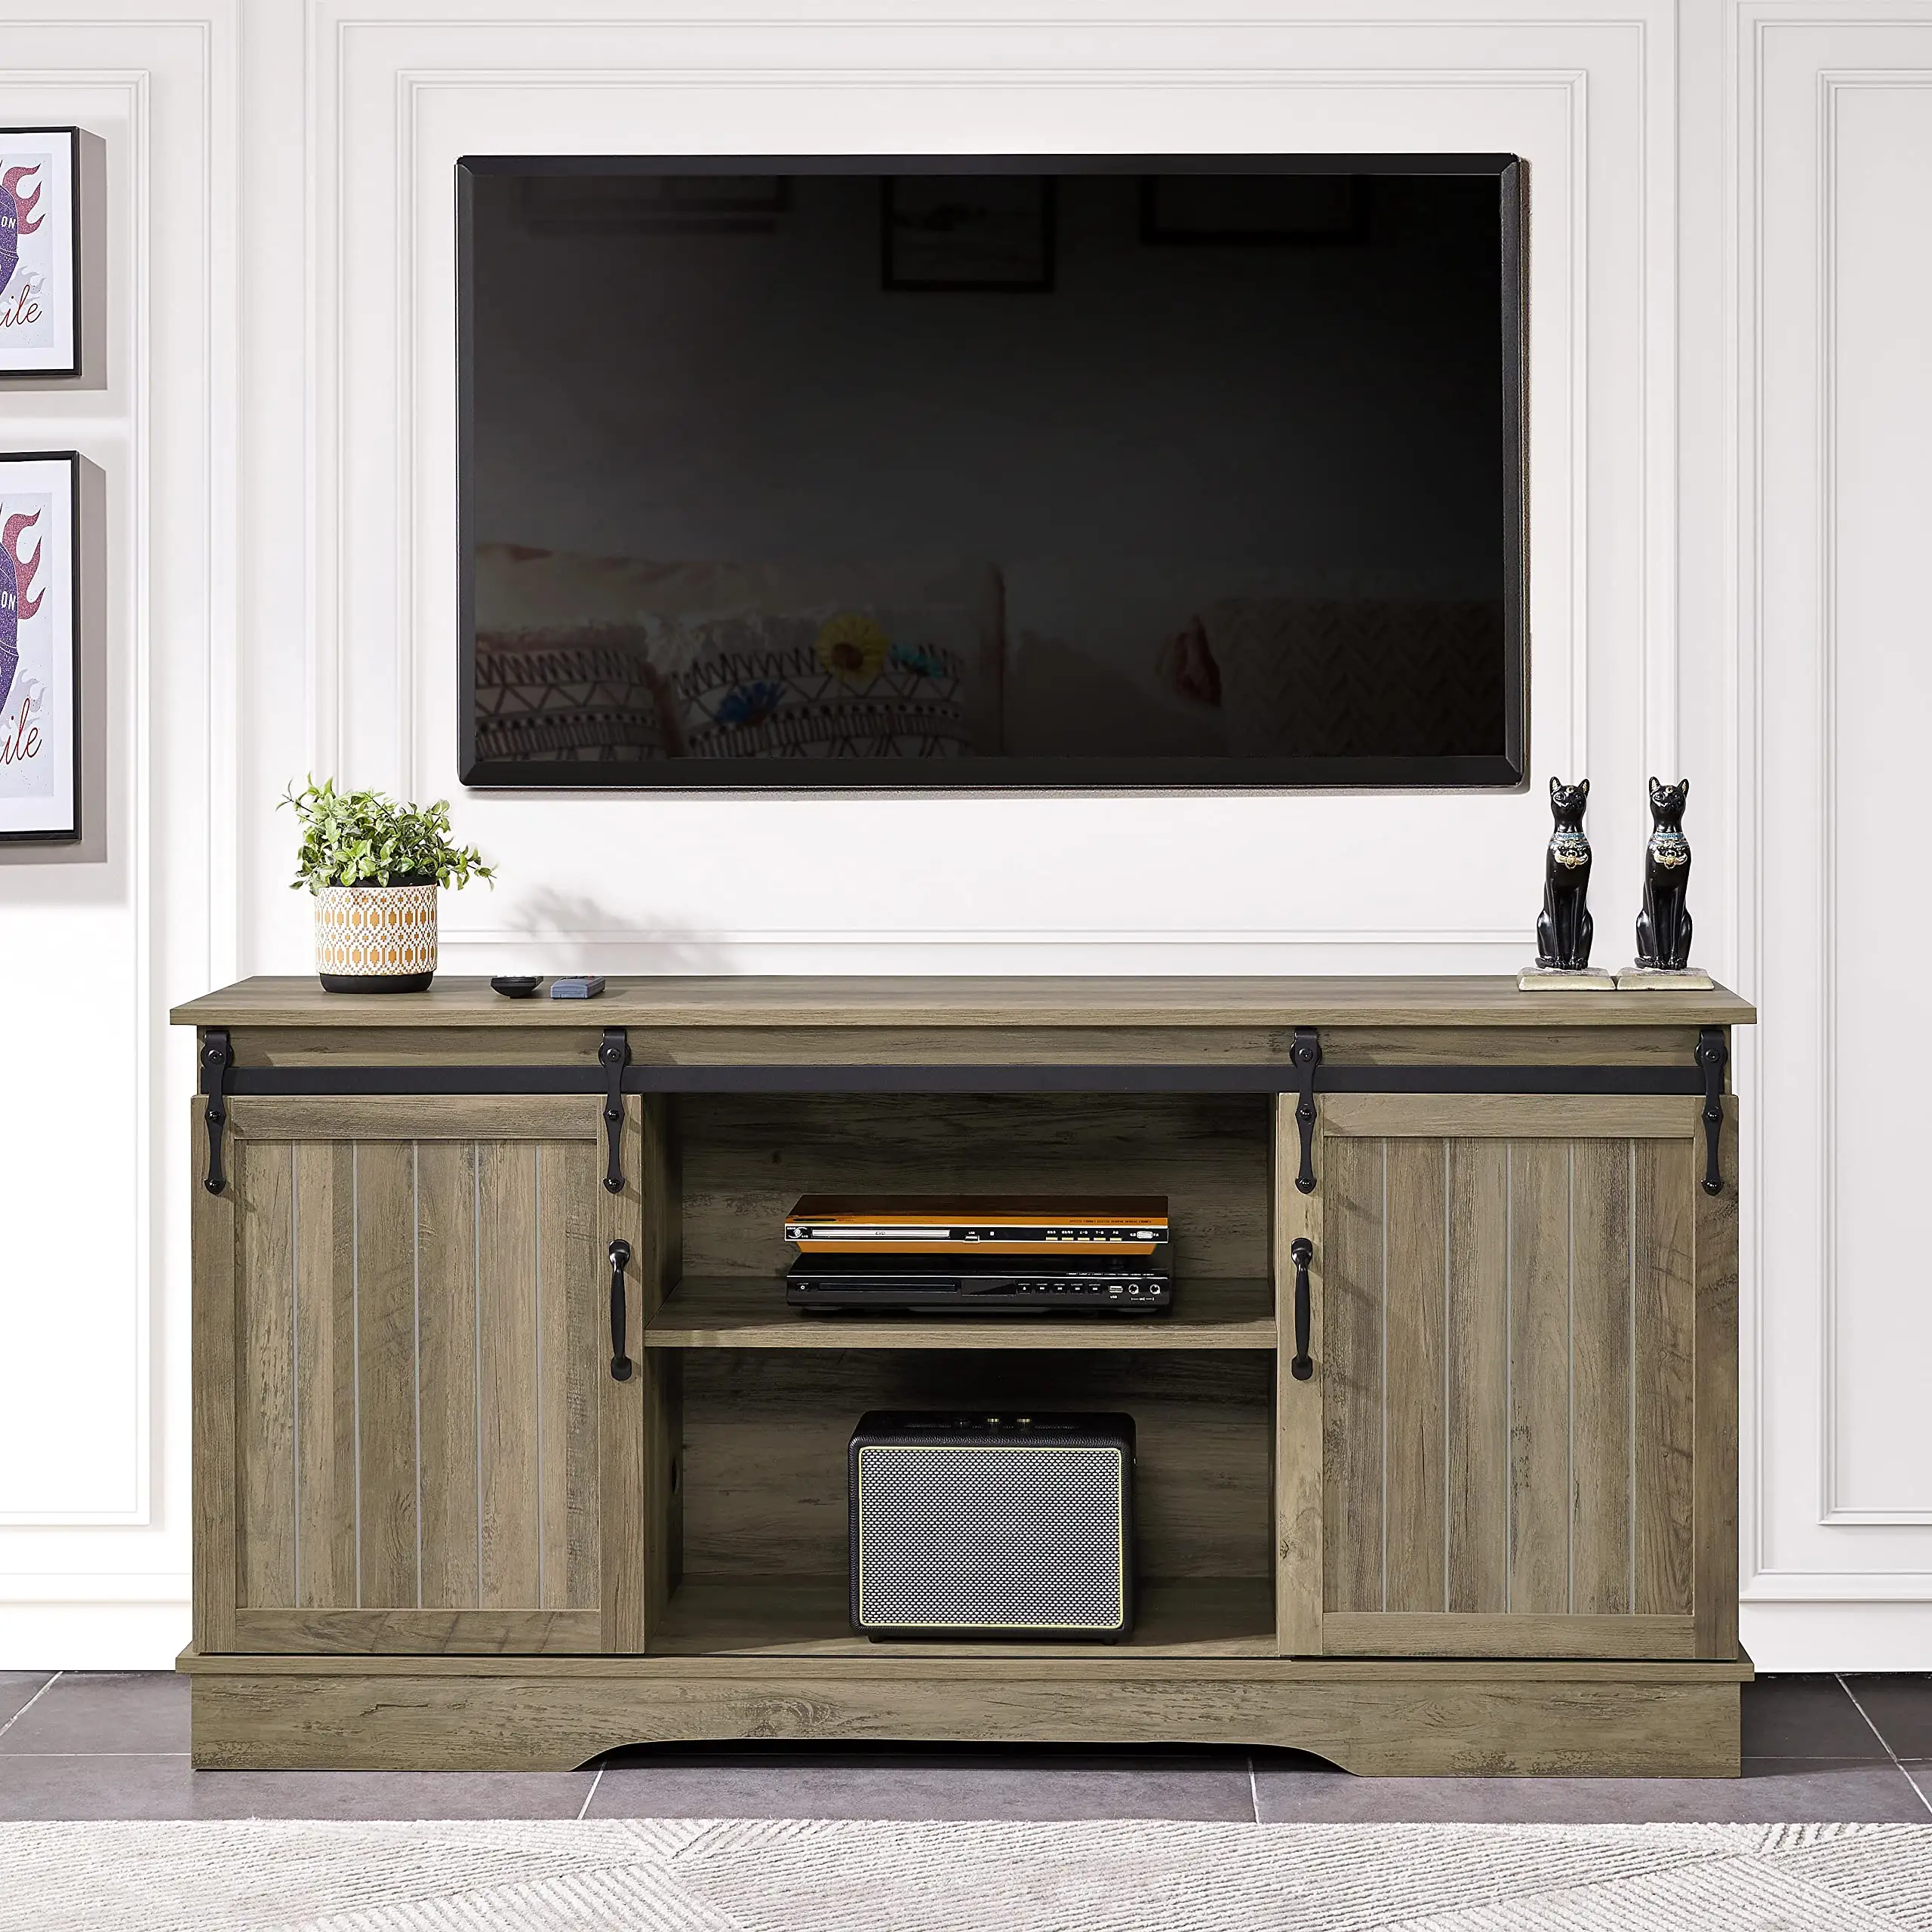 TV suporte para TV max 65 polegadas com porta de celeiro deslizante, 58 polegadas farmhouse media entertainment center armazenamento tv console tabela